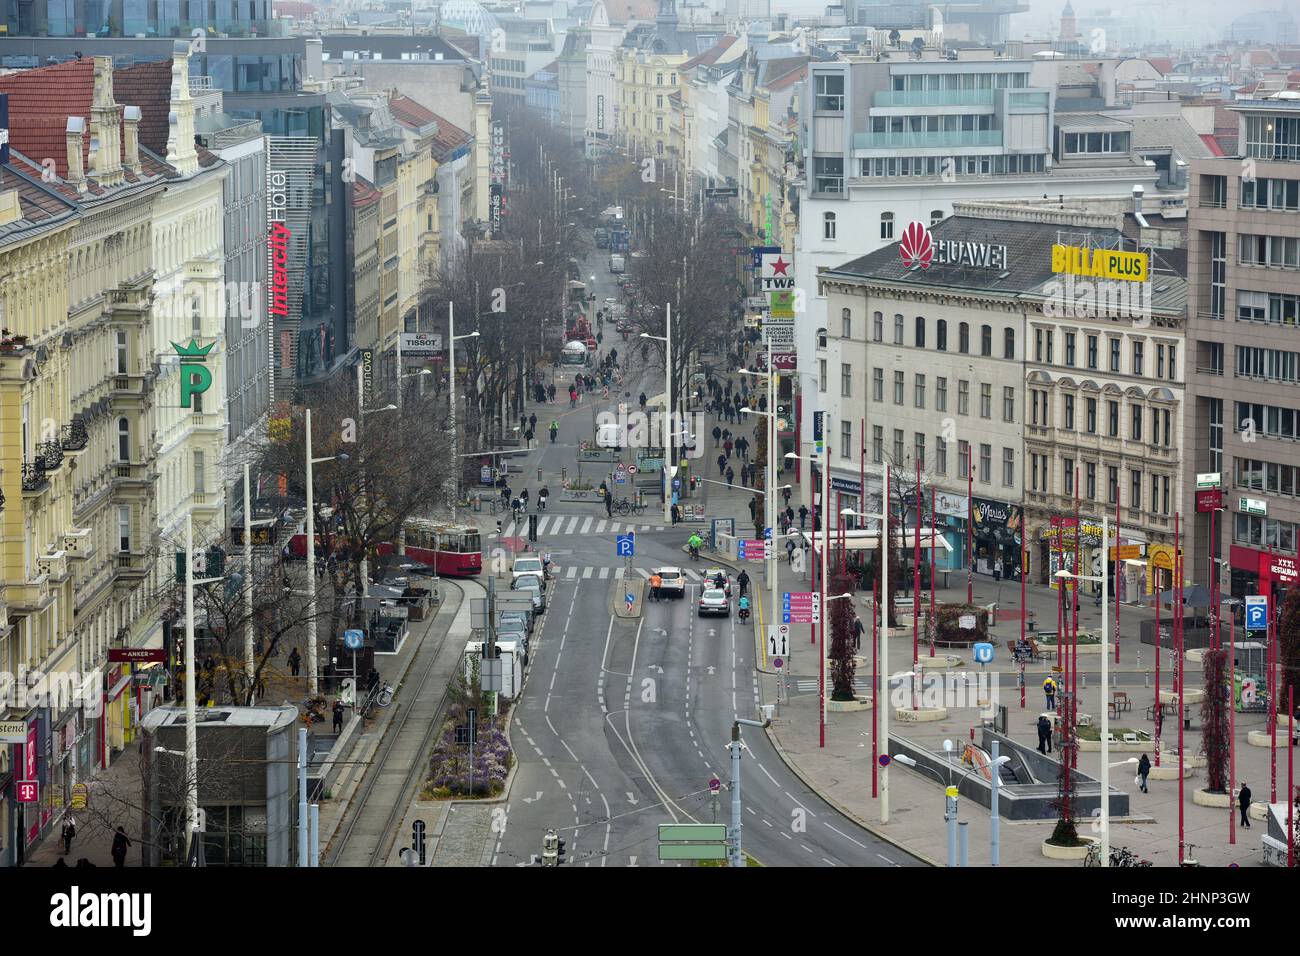 Die Einkaufsstraße Mariahilfer Straße in Wien (Österreich) - The Mariahilfer Straße shopping street in Vienna (Austria) -. Stock Photo